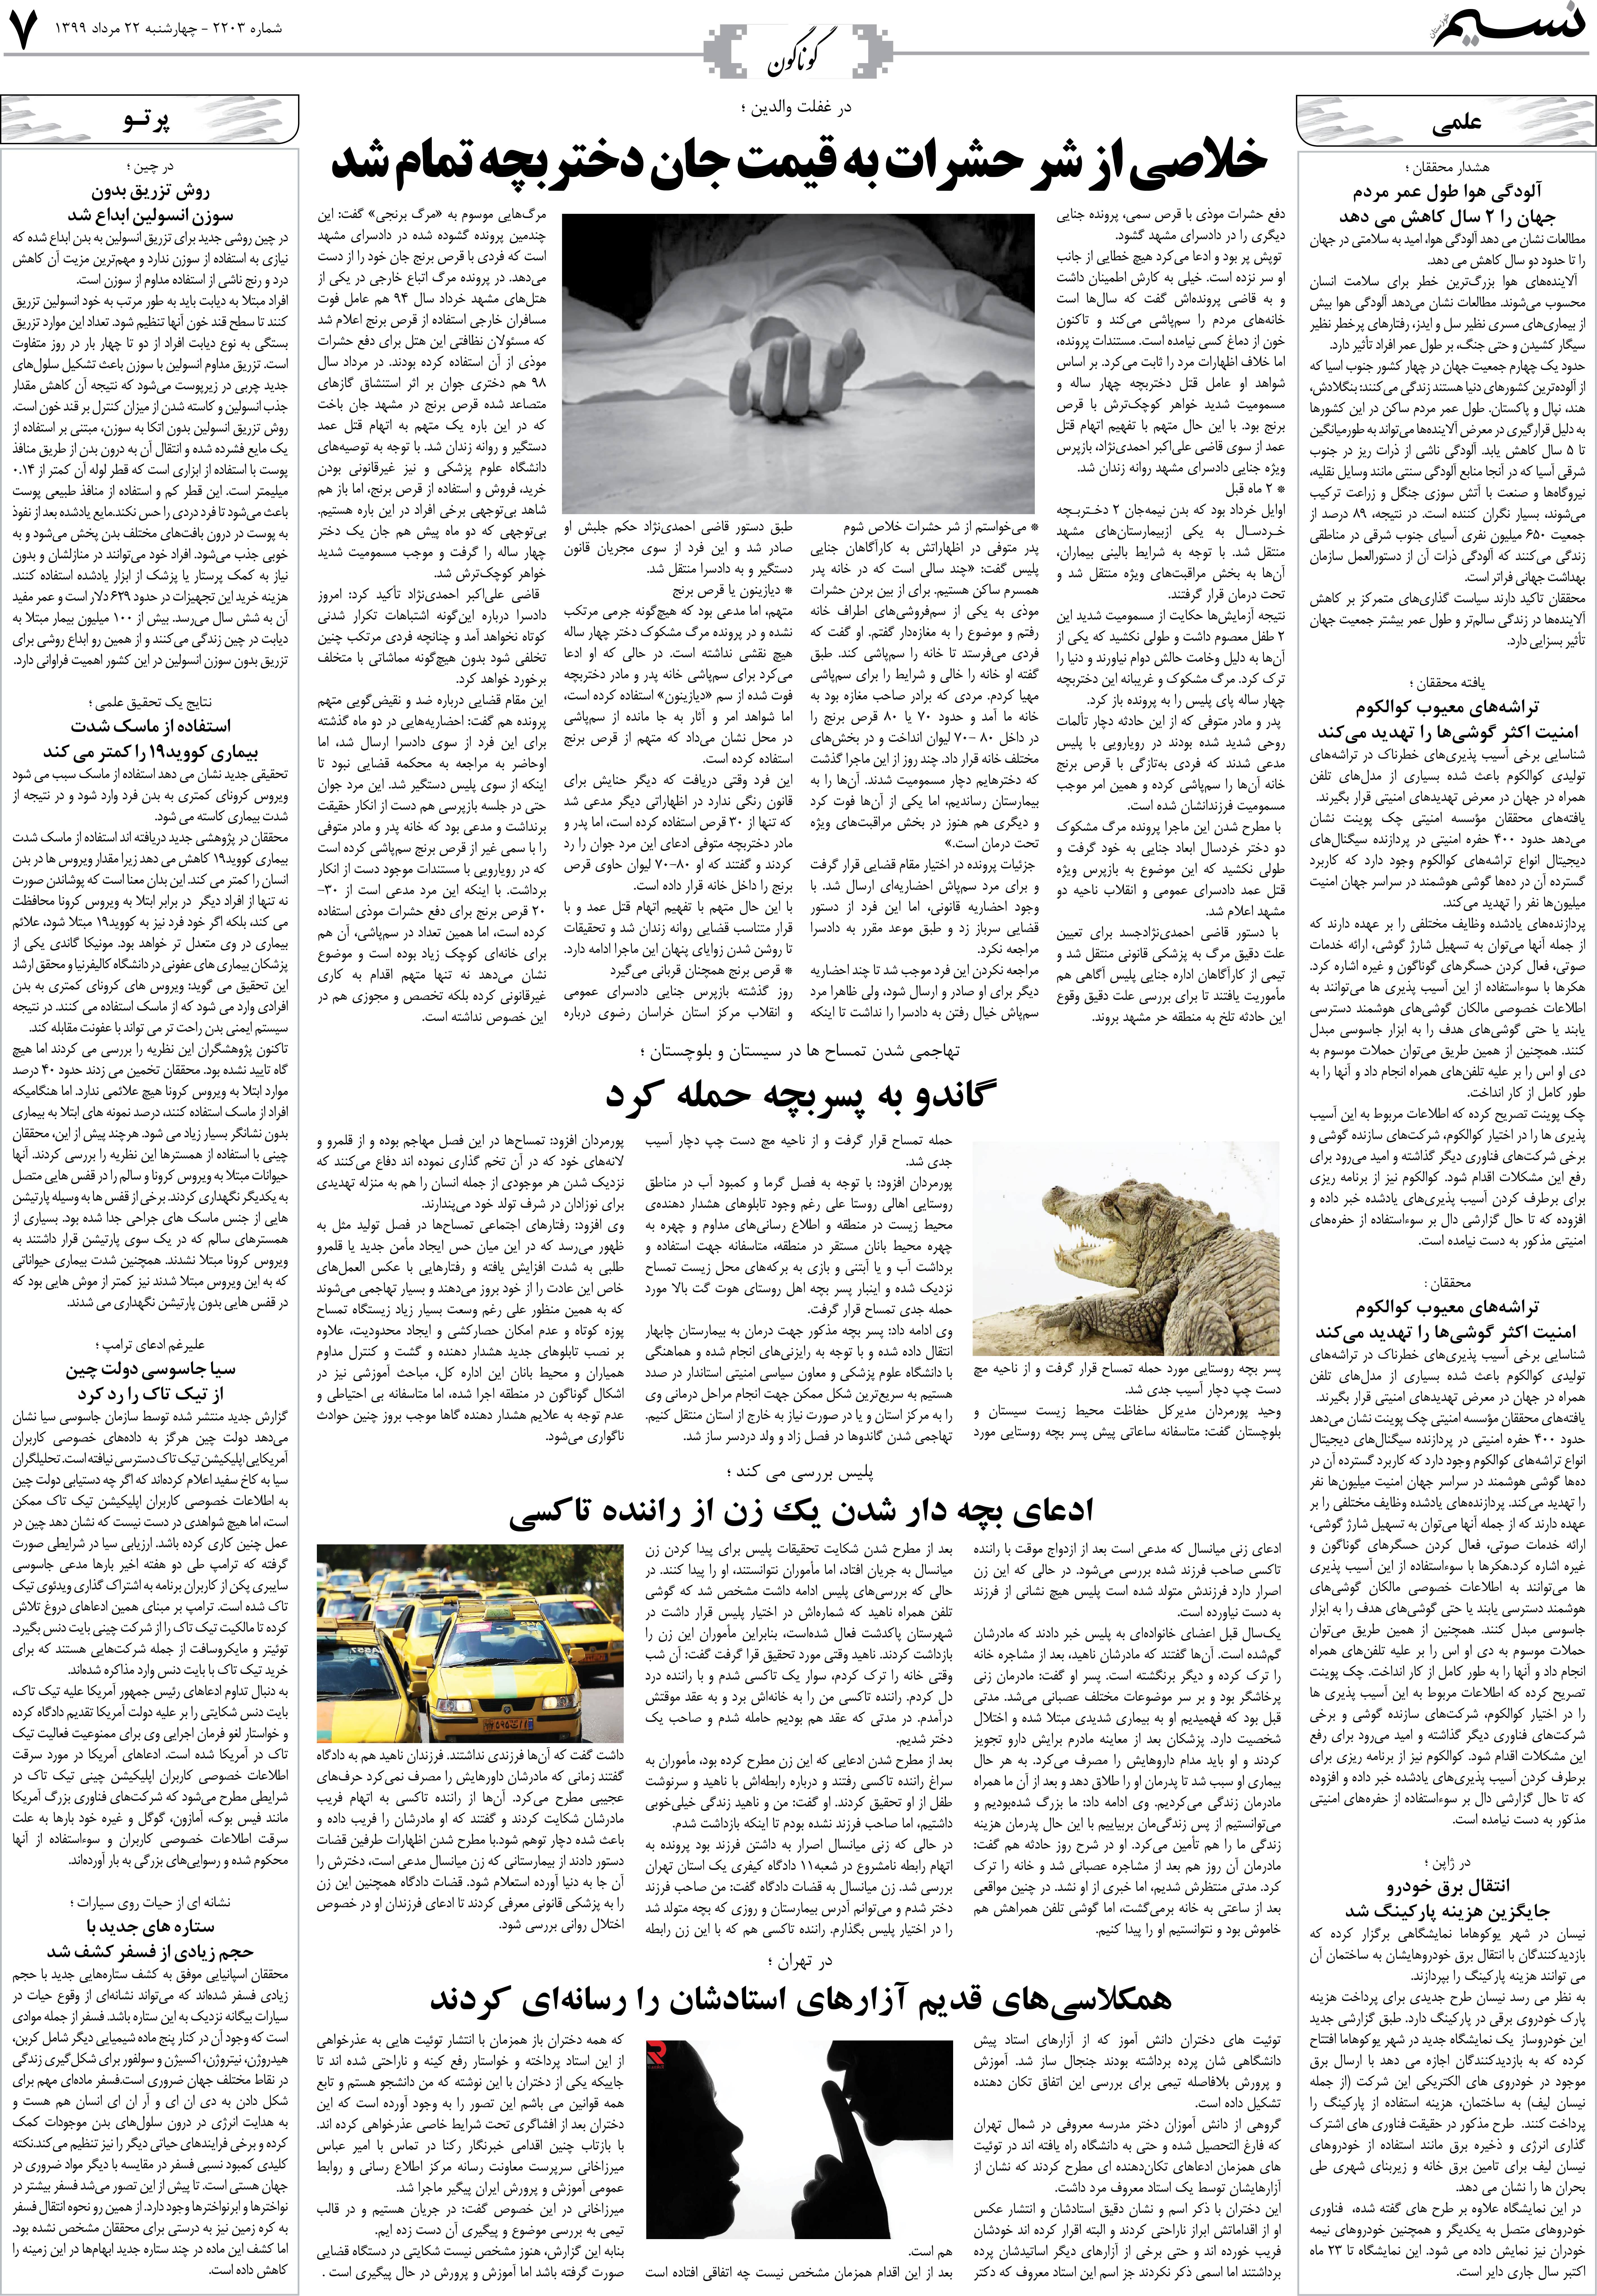 صفحه گوناگون روزنامه نسیم شماره 2203